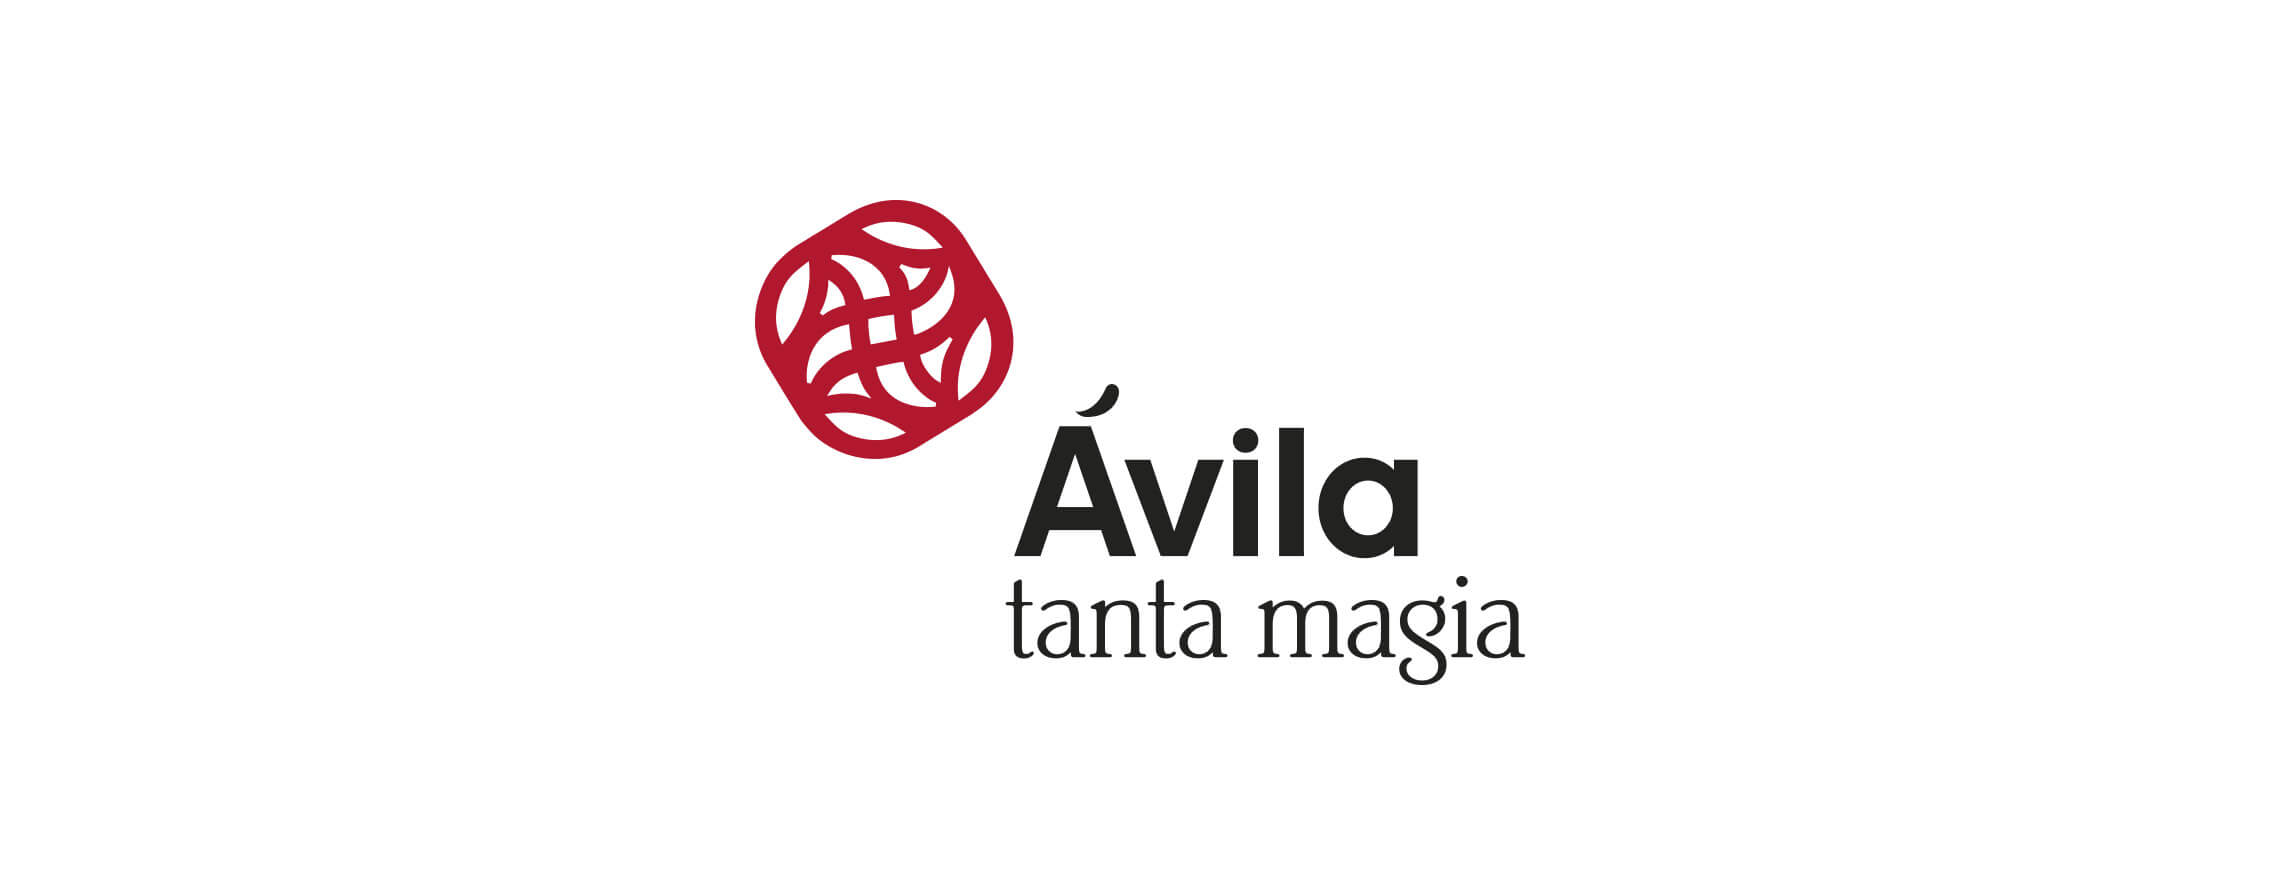 Avila-1